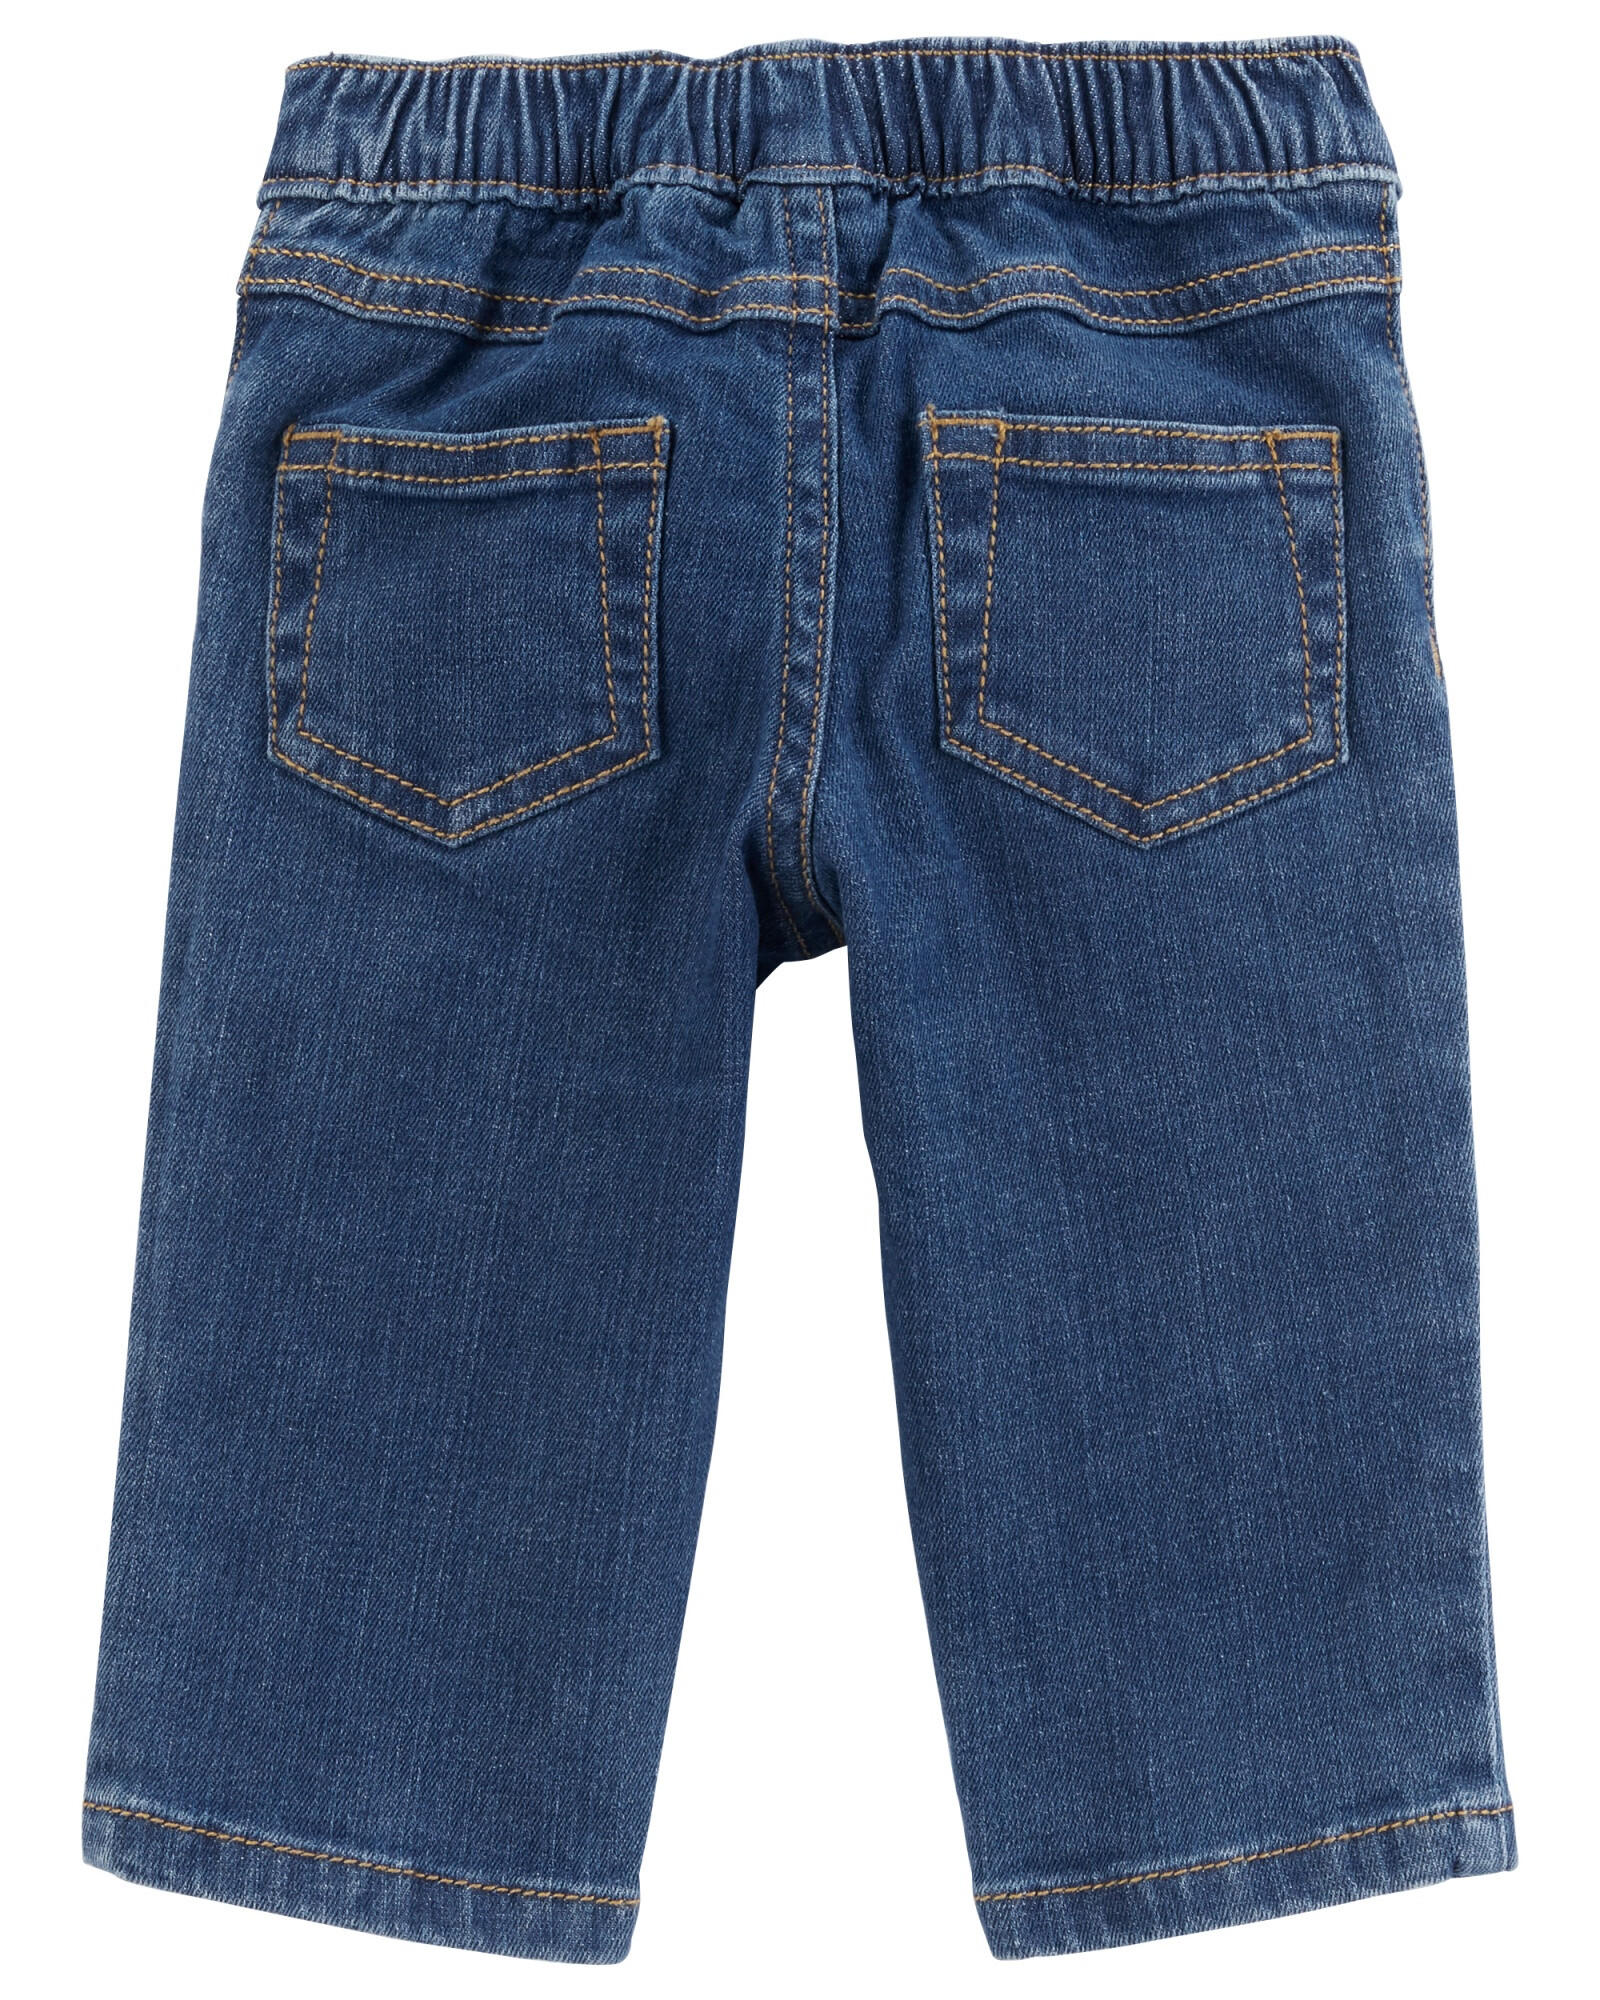 Set tres piezas pantalón jean, camisa de pana y body de algodón Sin color